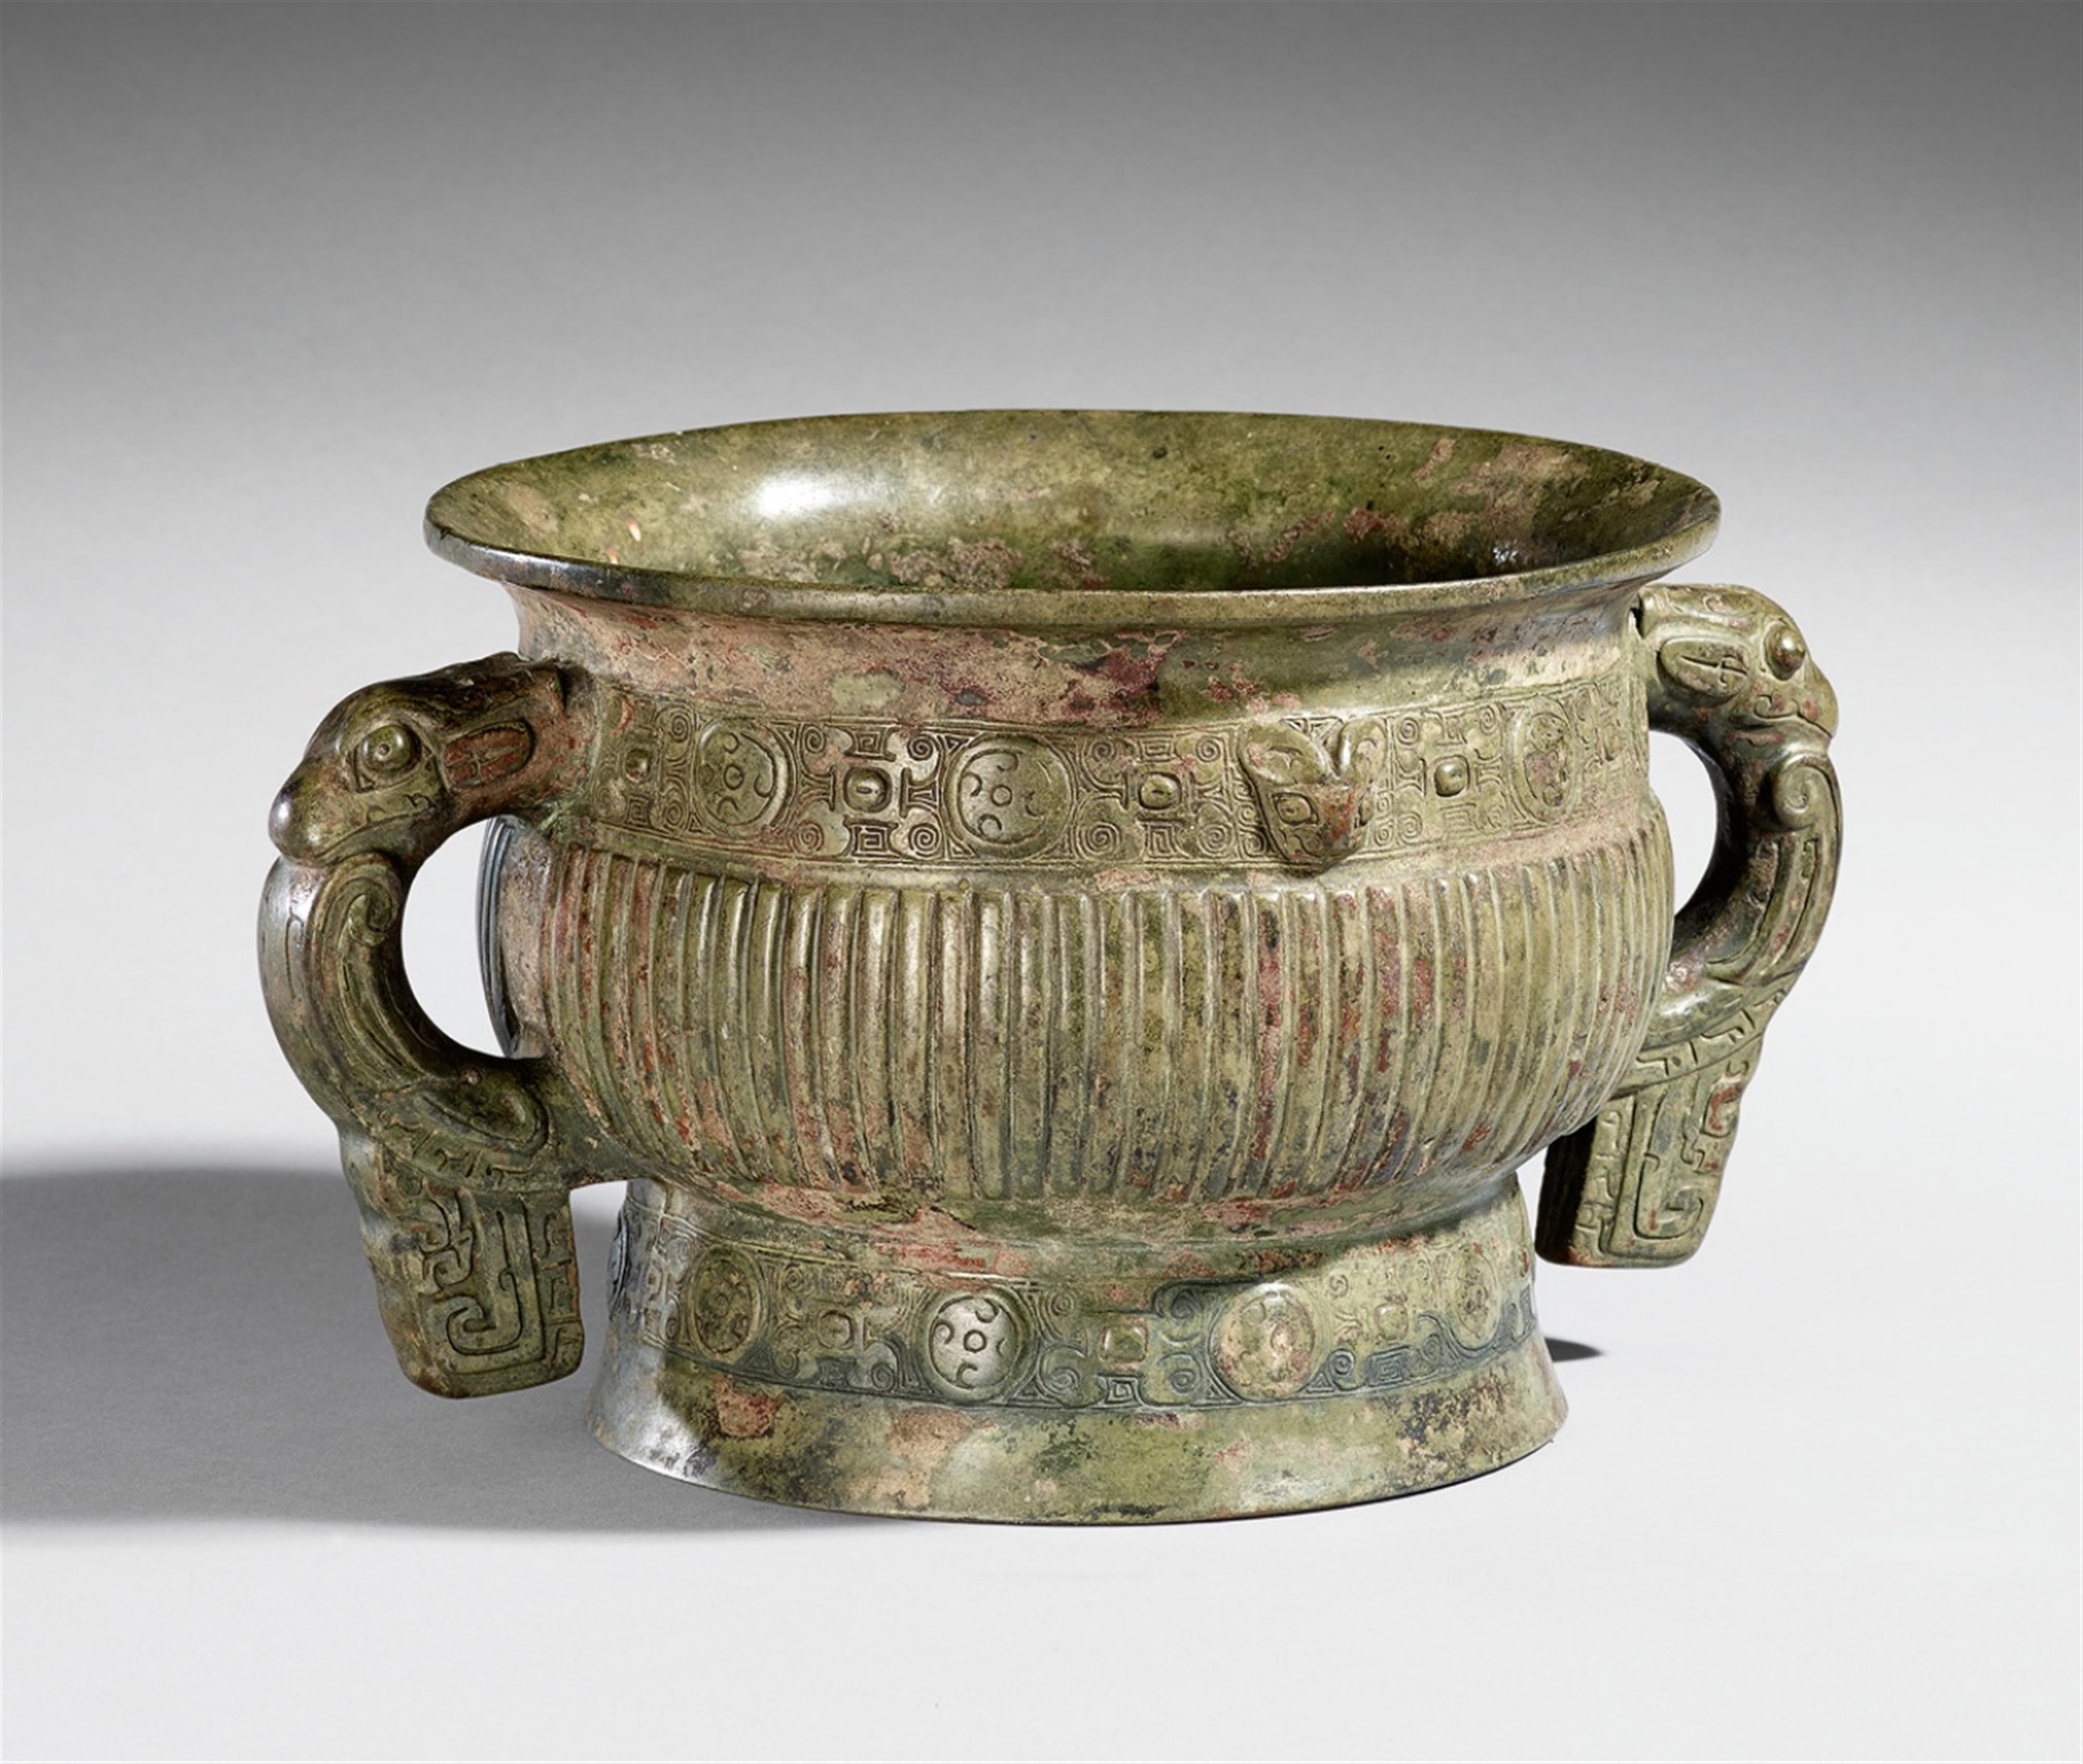 Speisebehälter vom Typ gui. Bronze. Im Stil der frühen Westlichen Zhou-Zeit - image-1